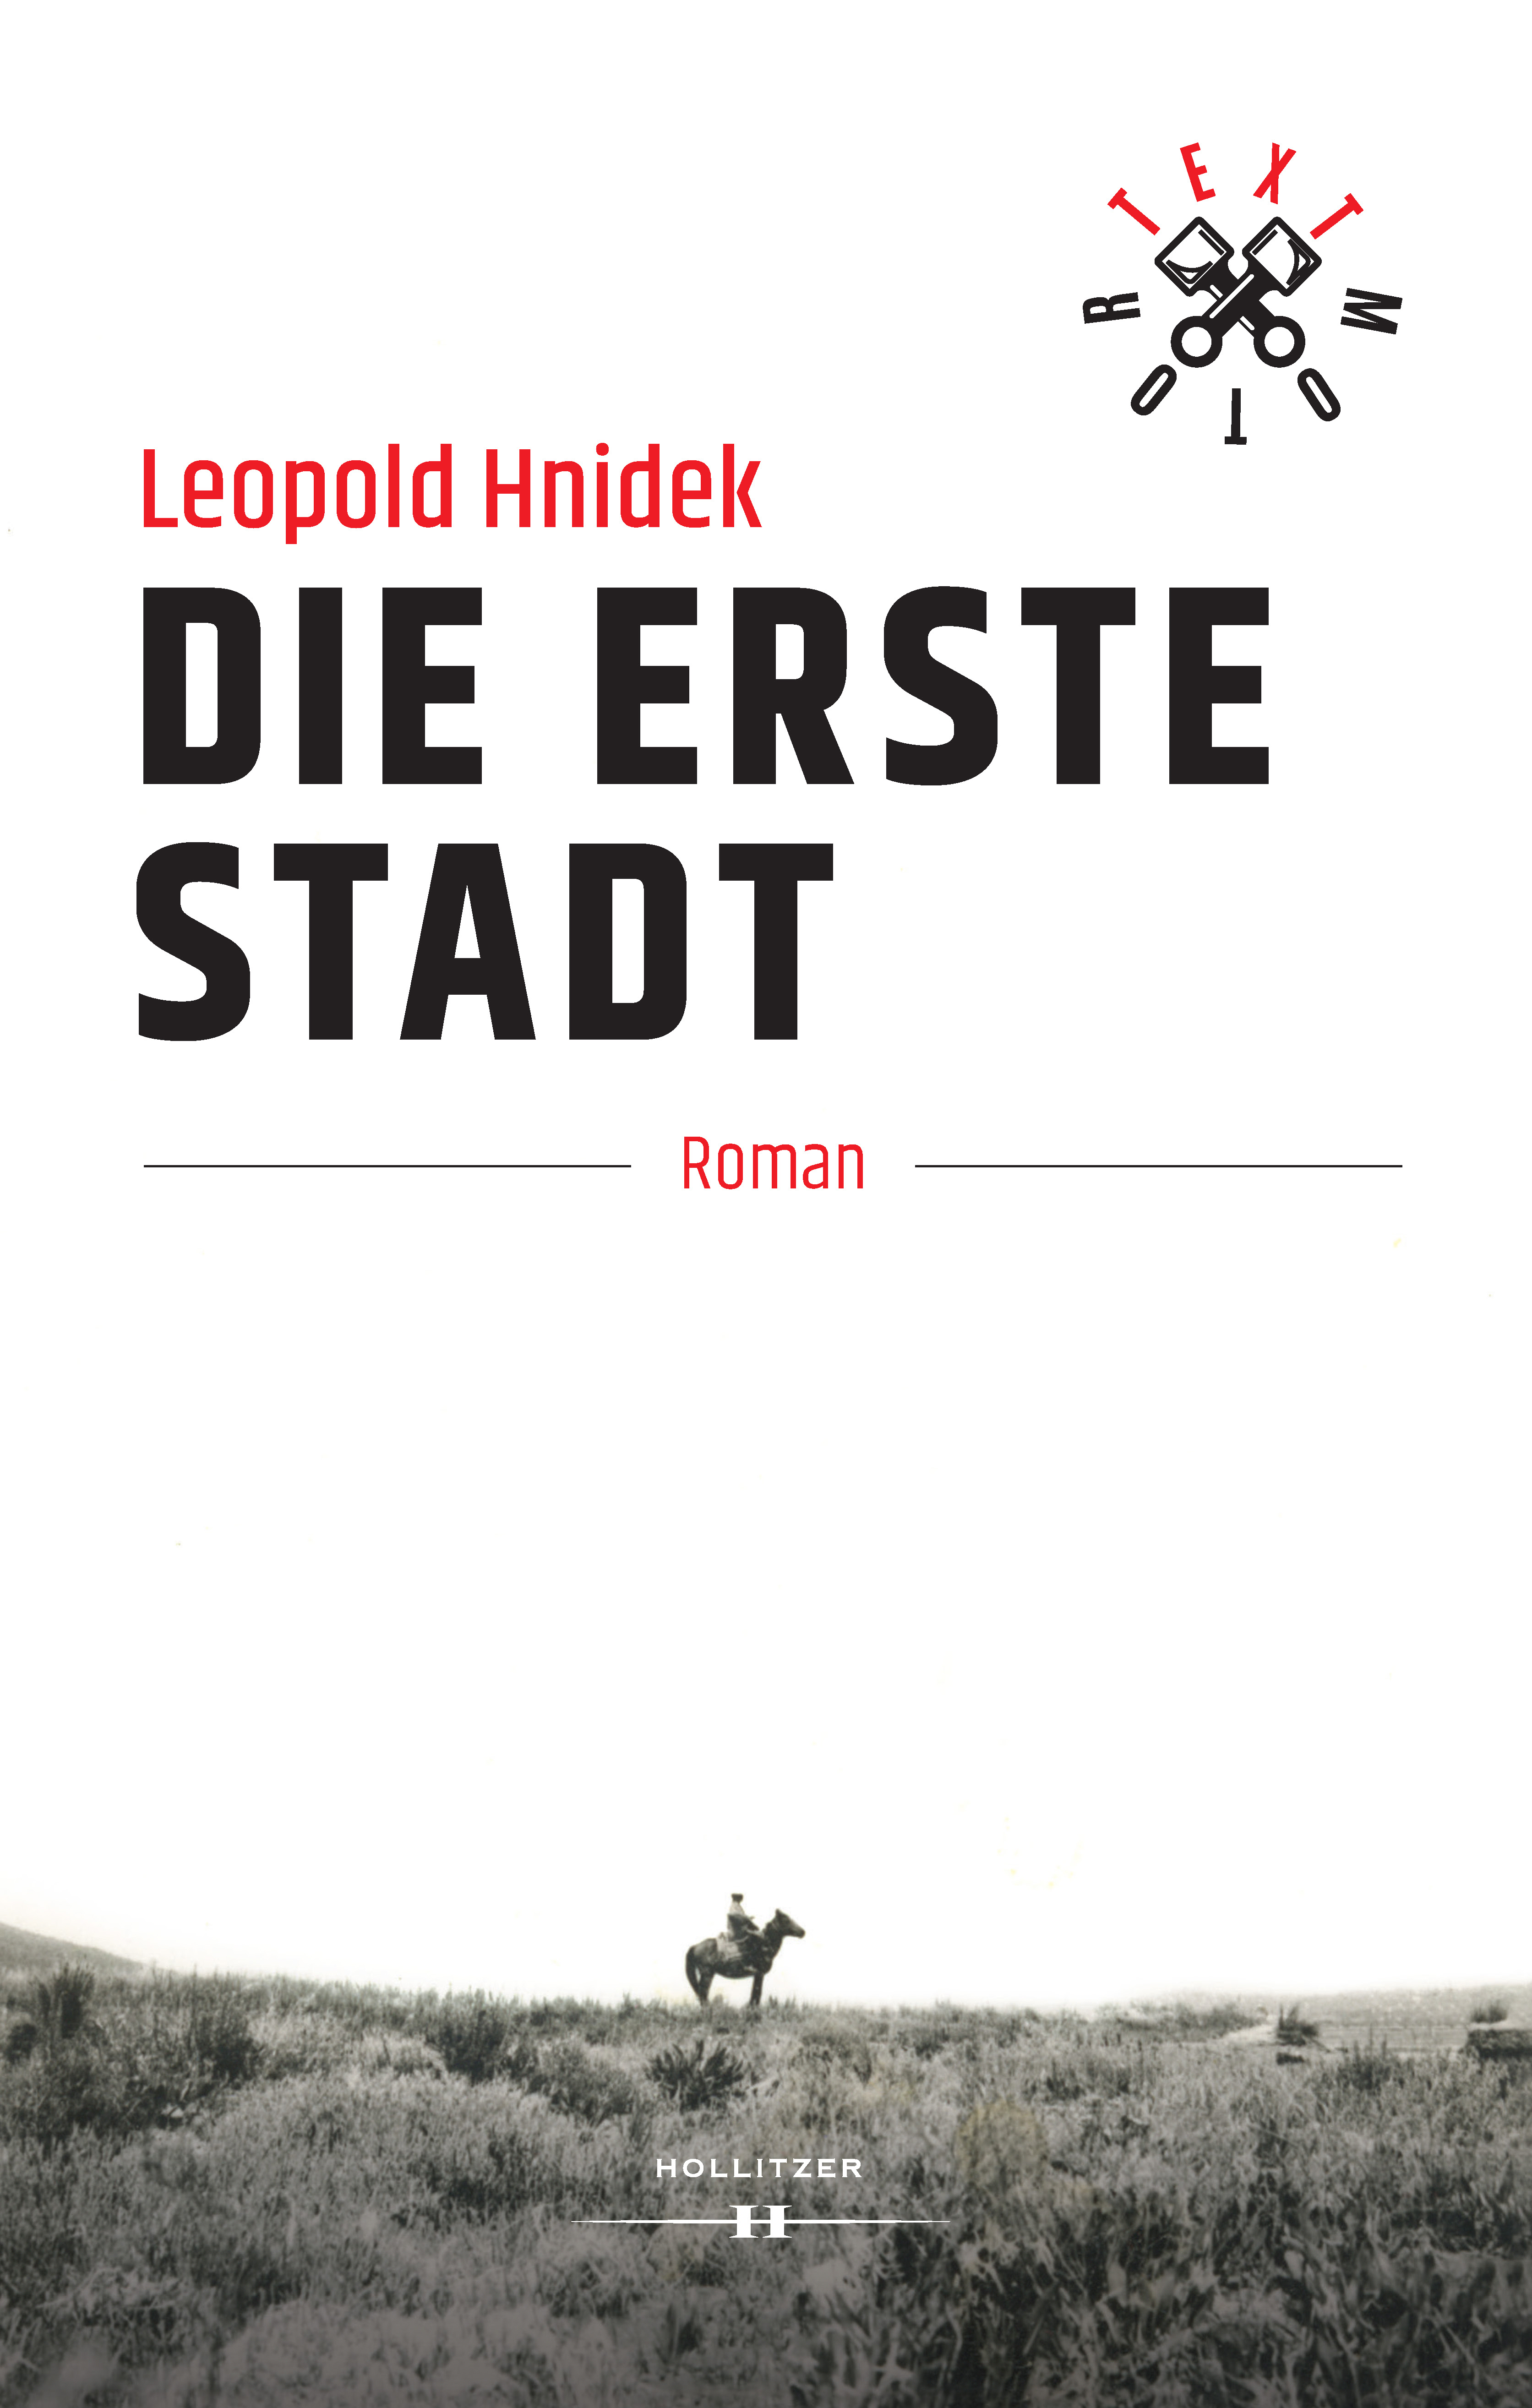 Leopold Hnidek Die erste Stadt